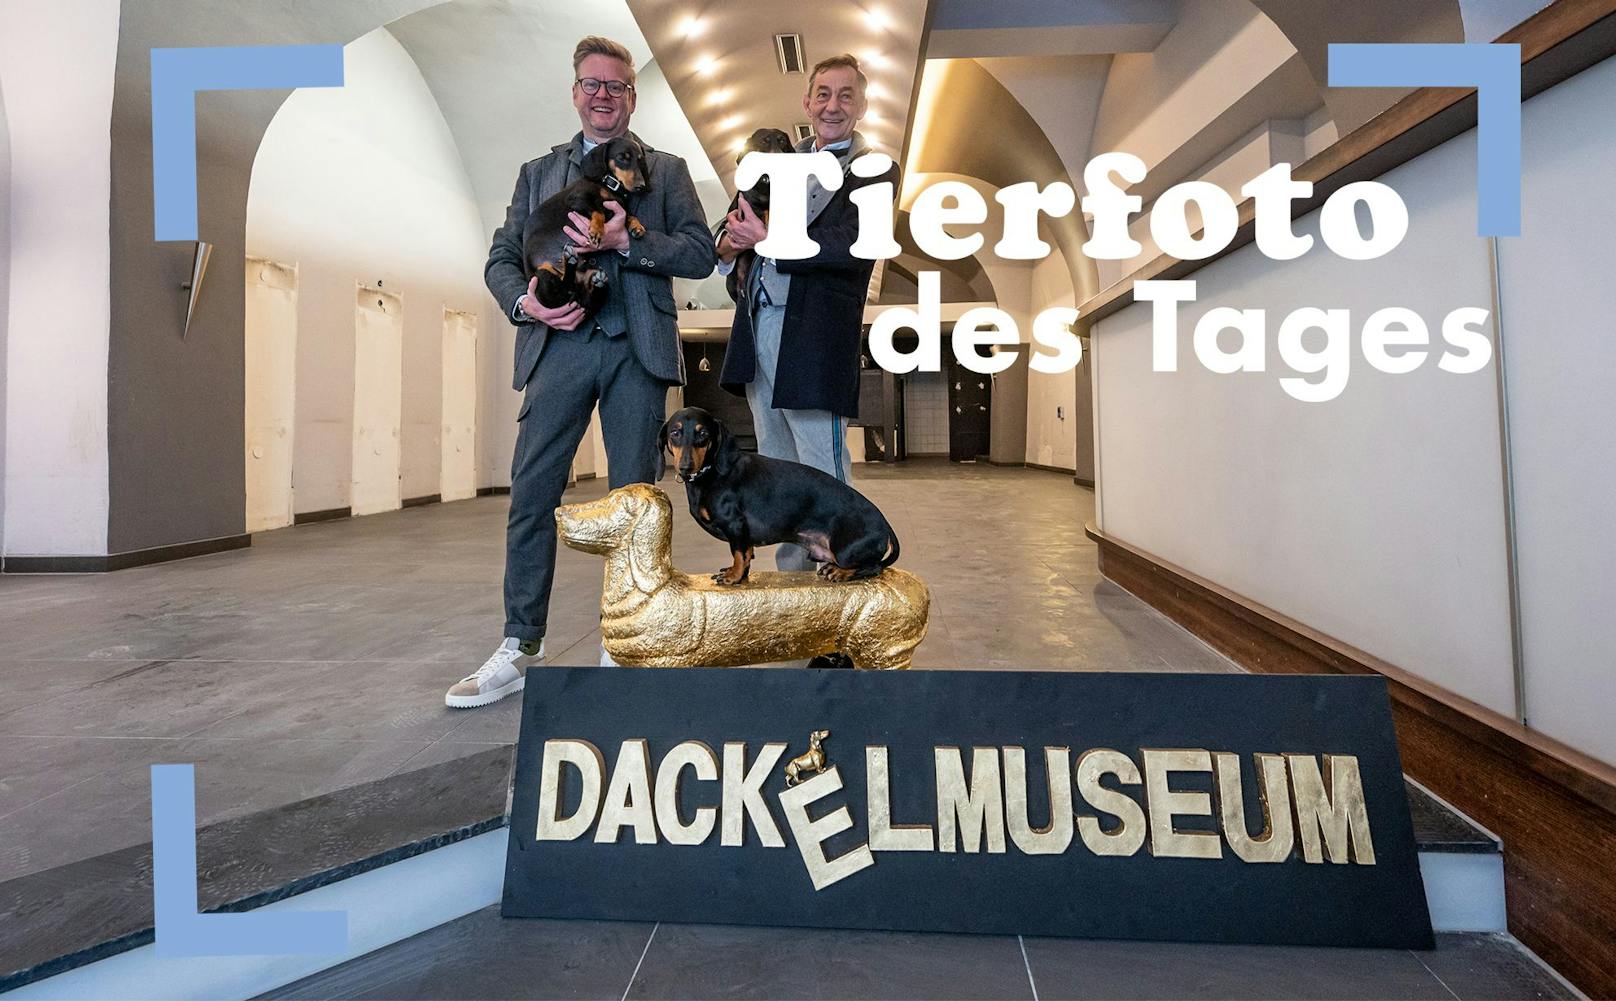 Das Passauer Dackelmuseum zieht nach Regensburg und stellt ca. 5.000 Dackel-Exponate aus. Witzig. 